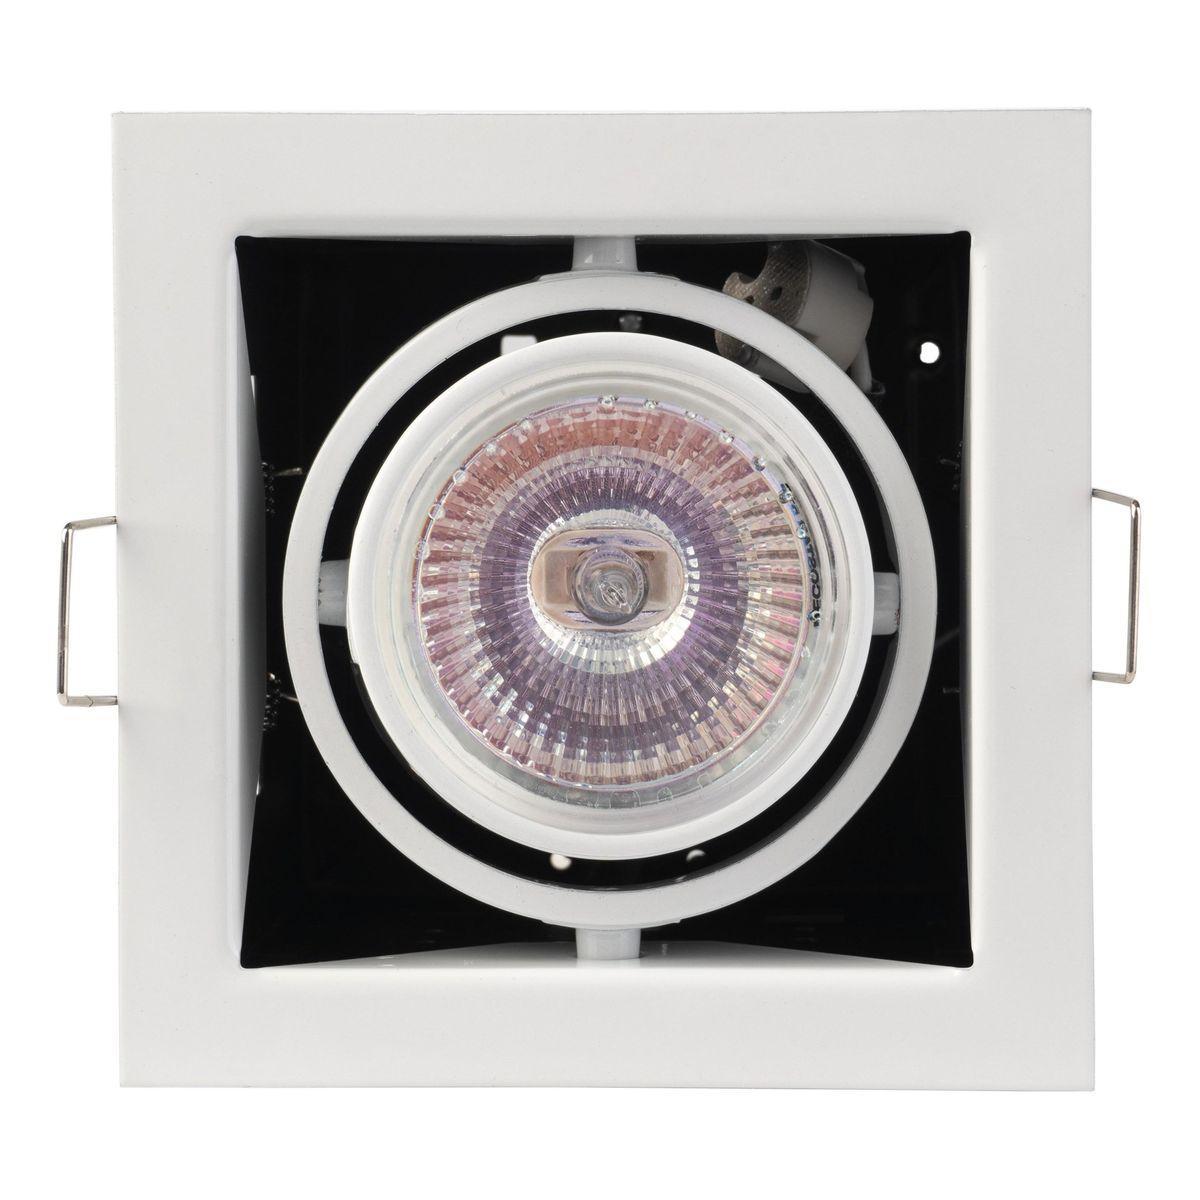 Встраиваемый светильник IMEX Cardo MR16 IL.0006.1001 светильник потолочный встраиваемый mr16 g5 3 белый dl2802